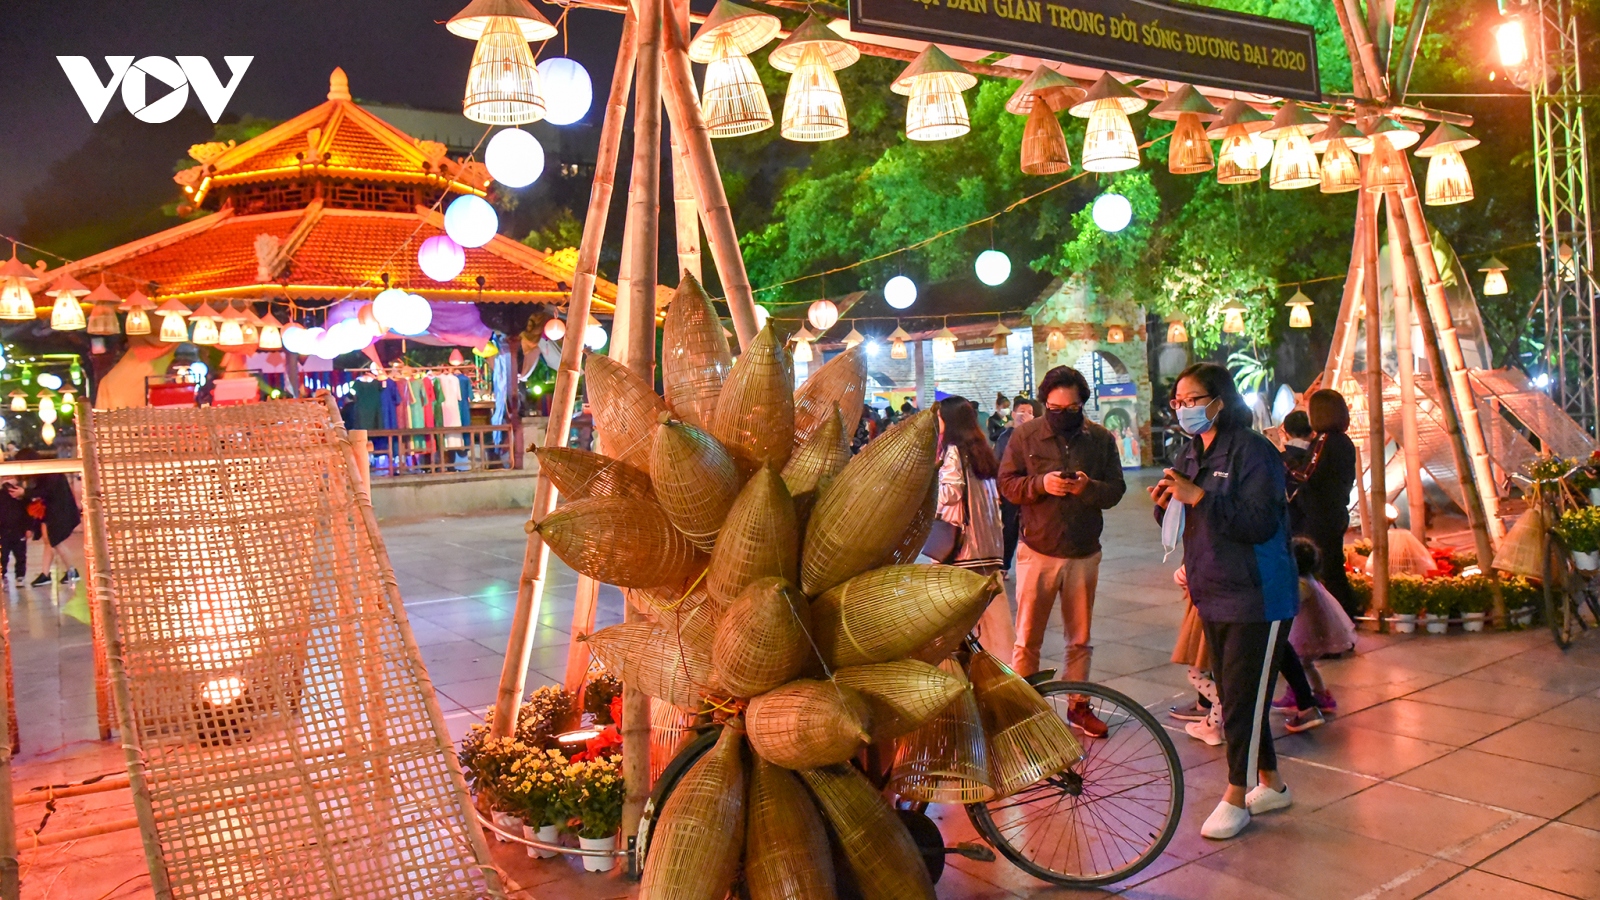 Khám phá văn hóa dân gian trong đời sống đương đại tại Hà Nội